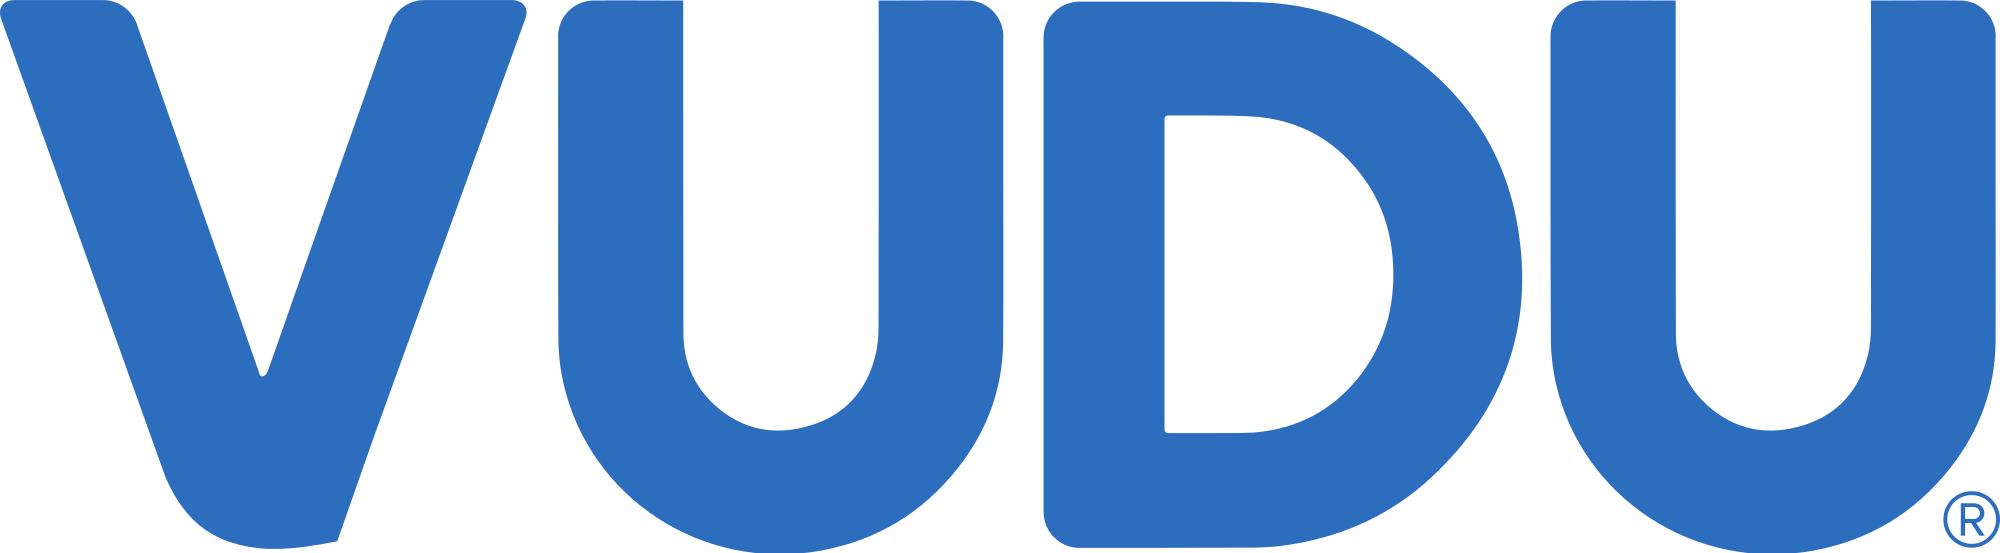 Watch Now - - Vudu Logo Transparent (2000x553)